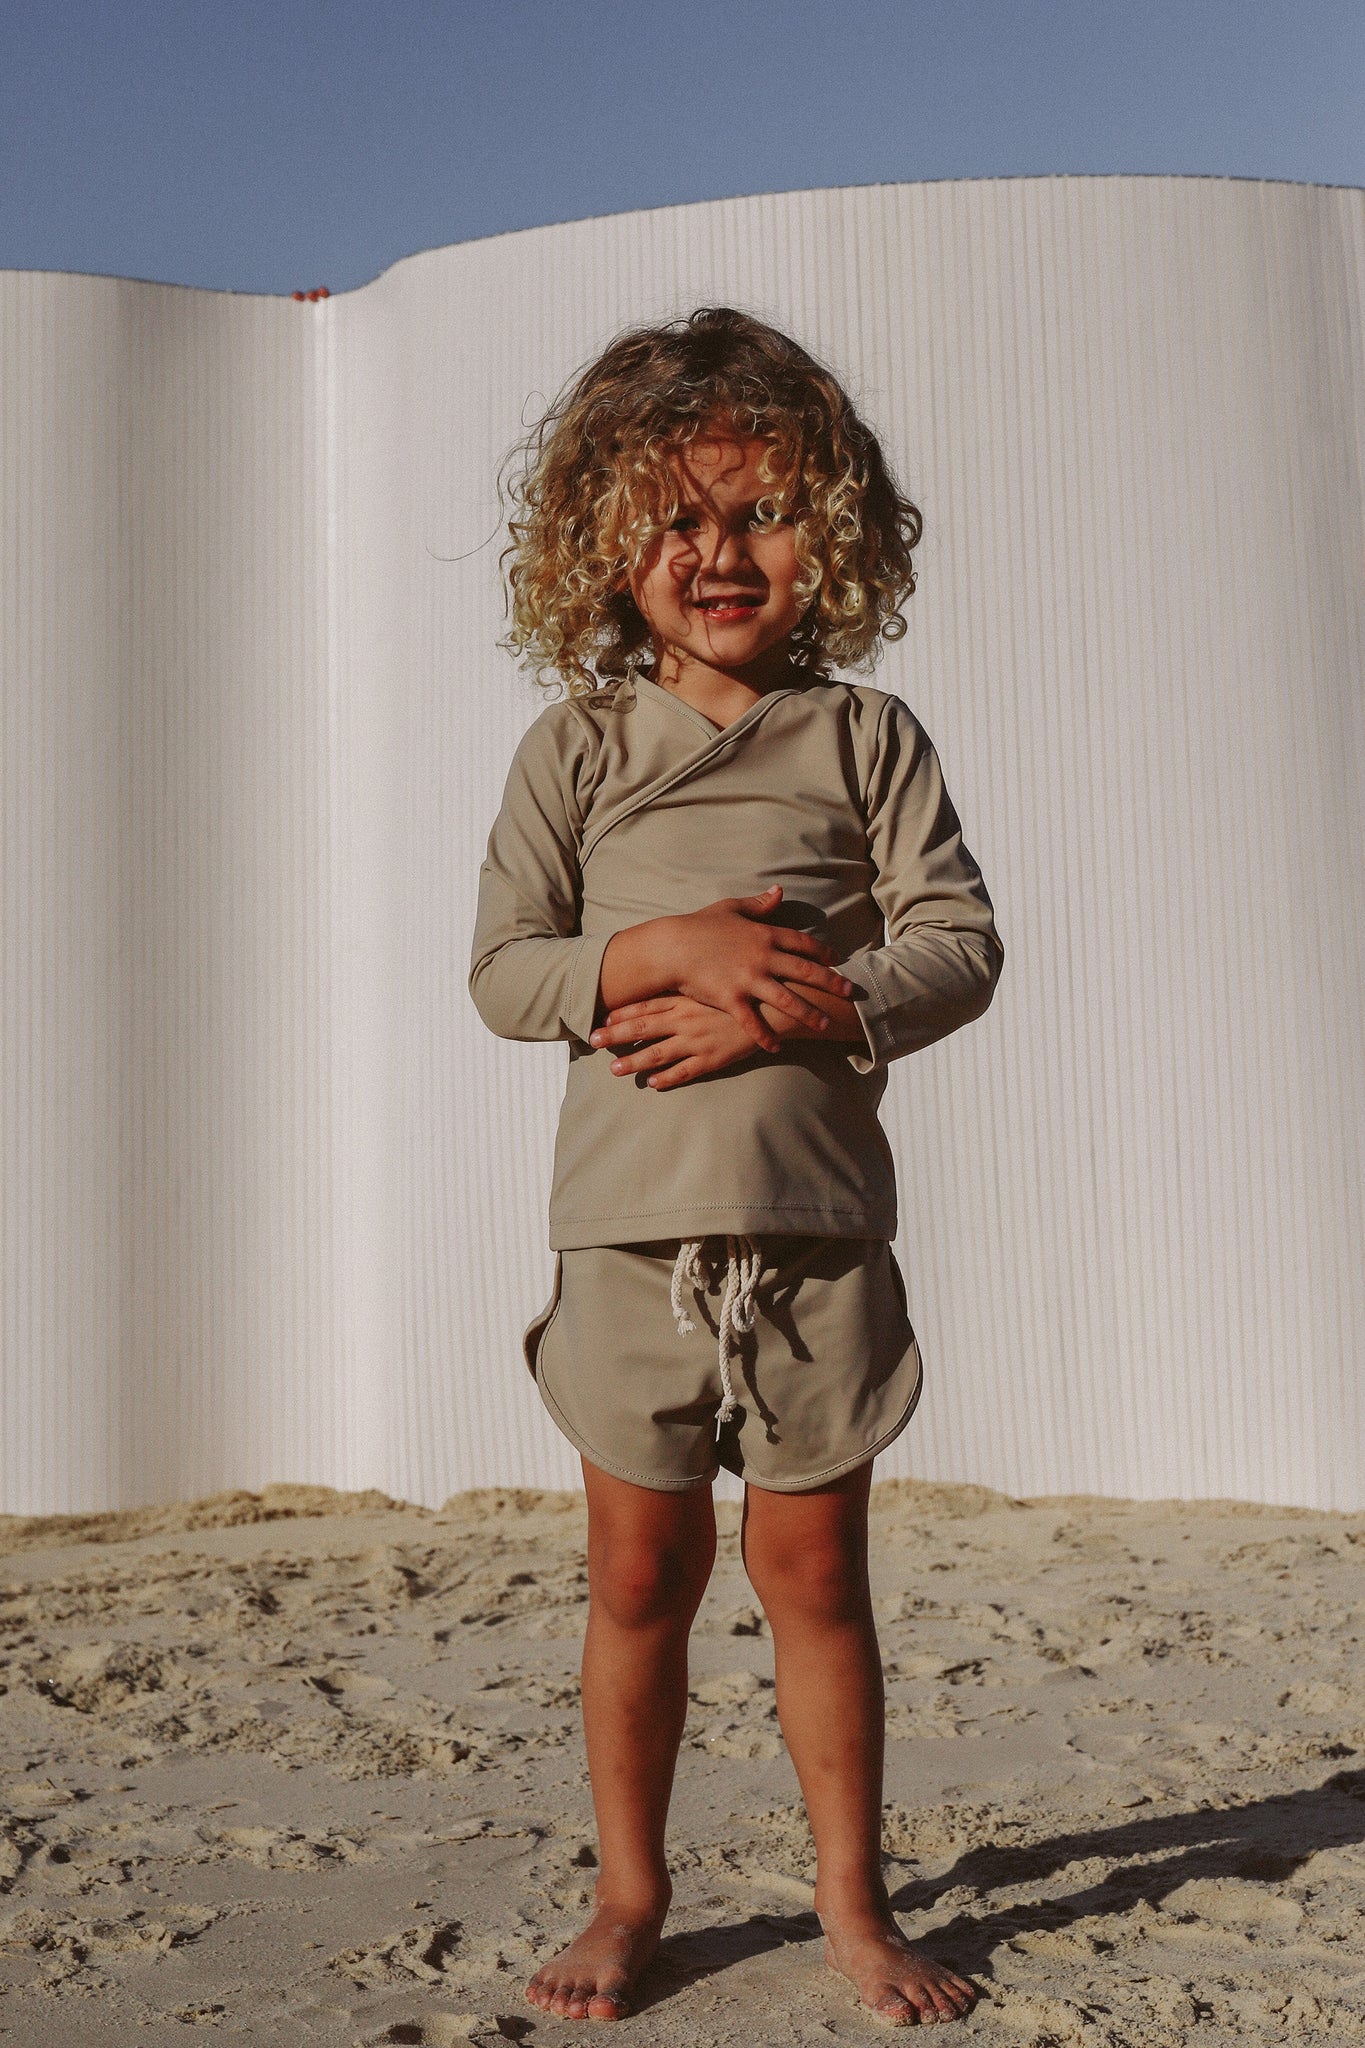 Ina Swim Sustainable Kids Swimwear  Sand Rash Shirt – The Someday Co